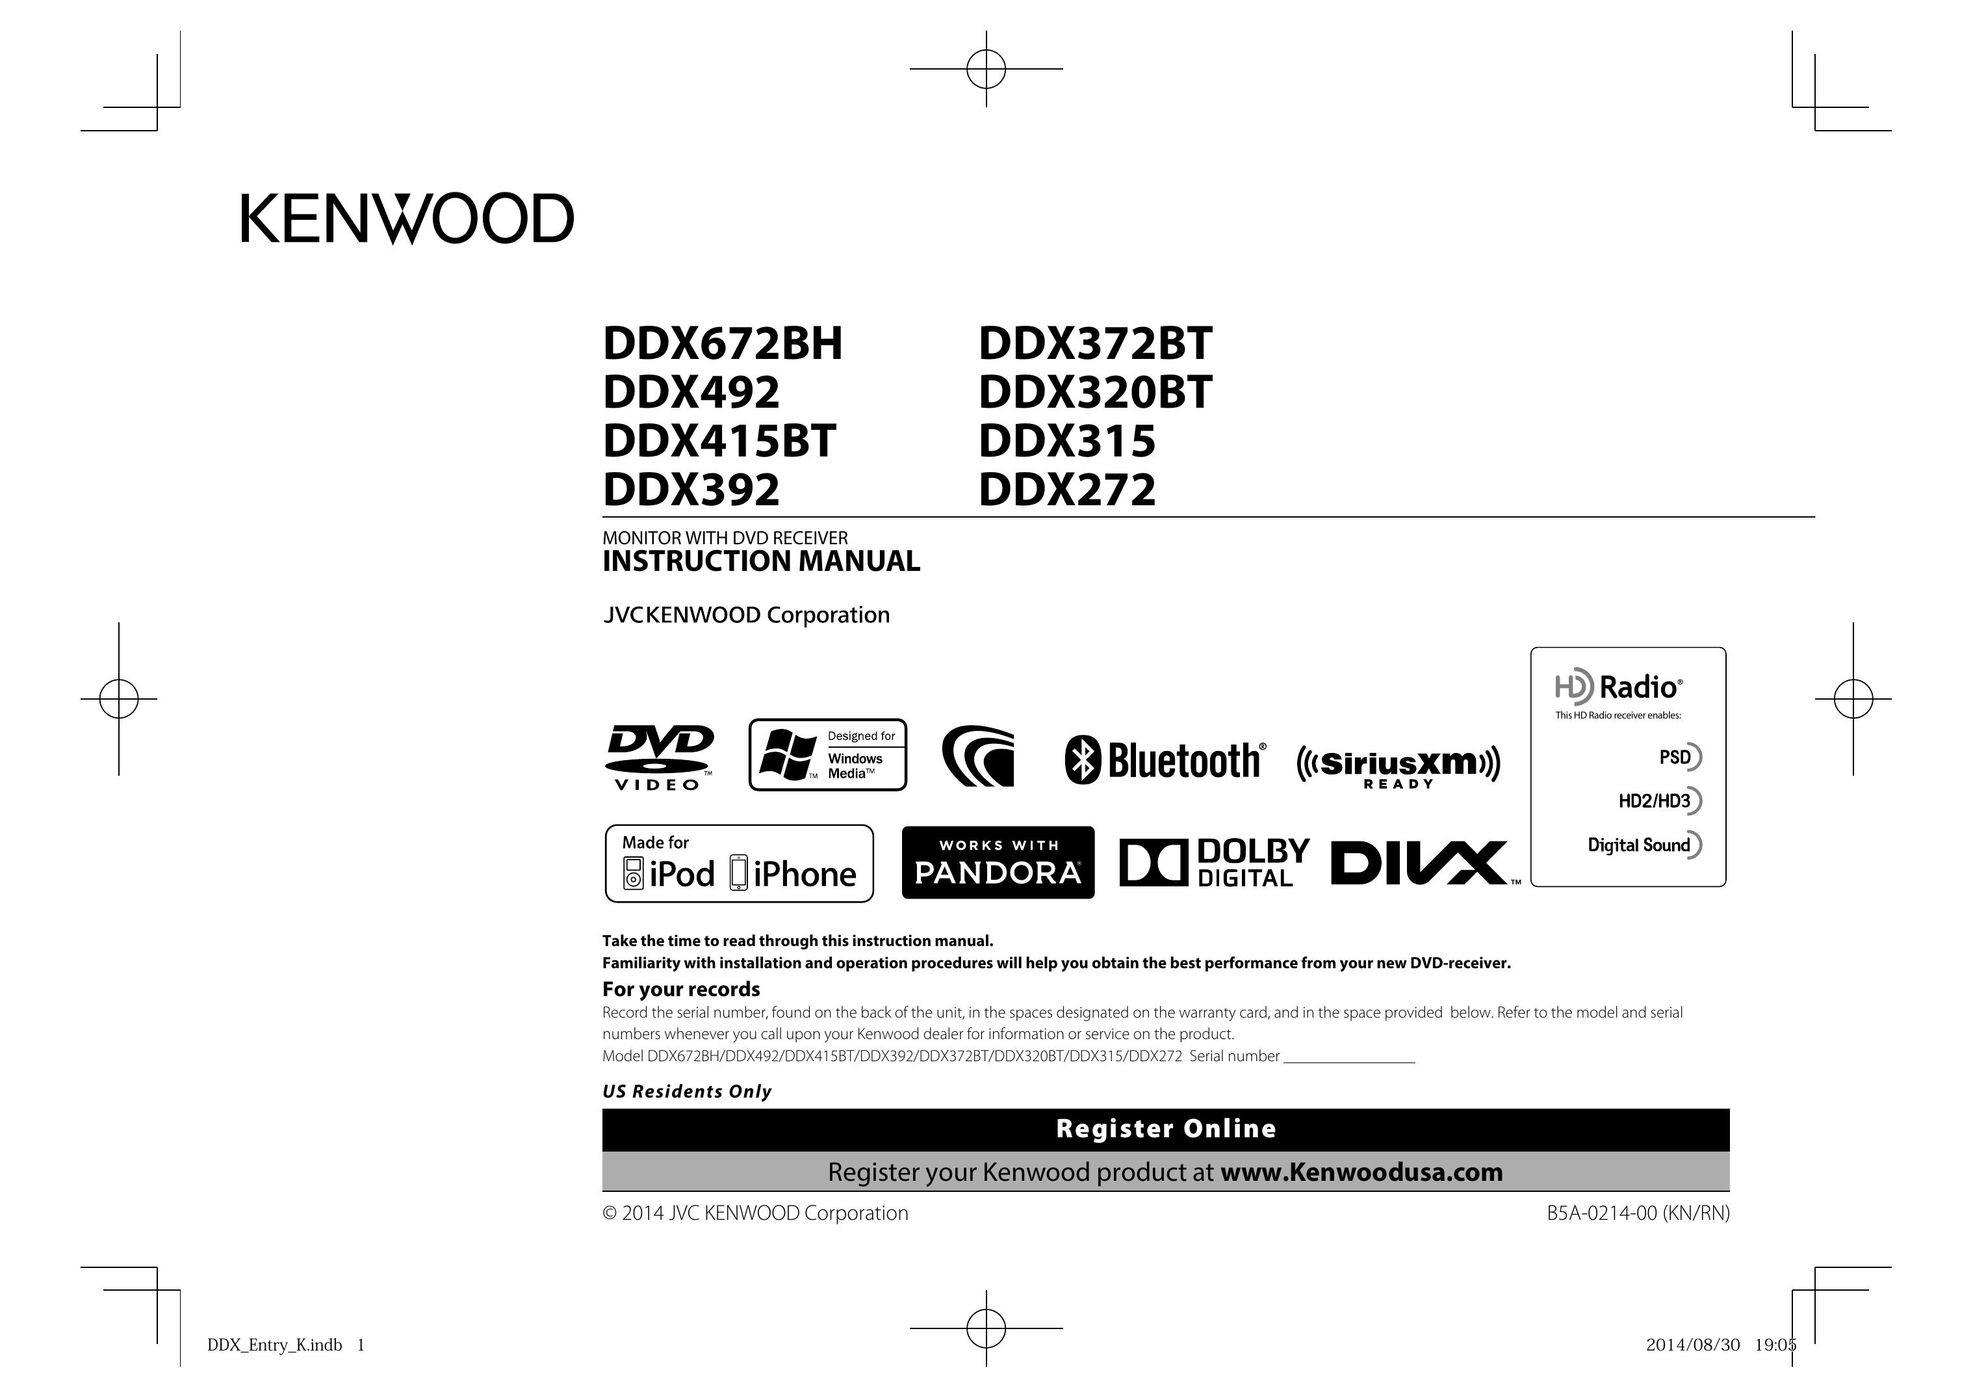 Kenwood DDX372BT Car Video System User Manual